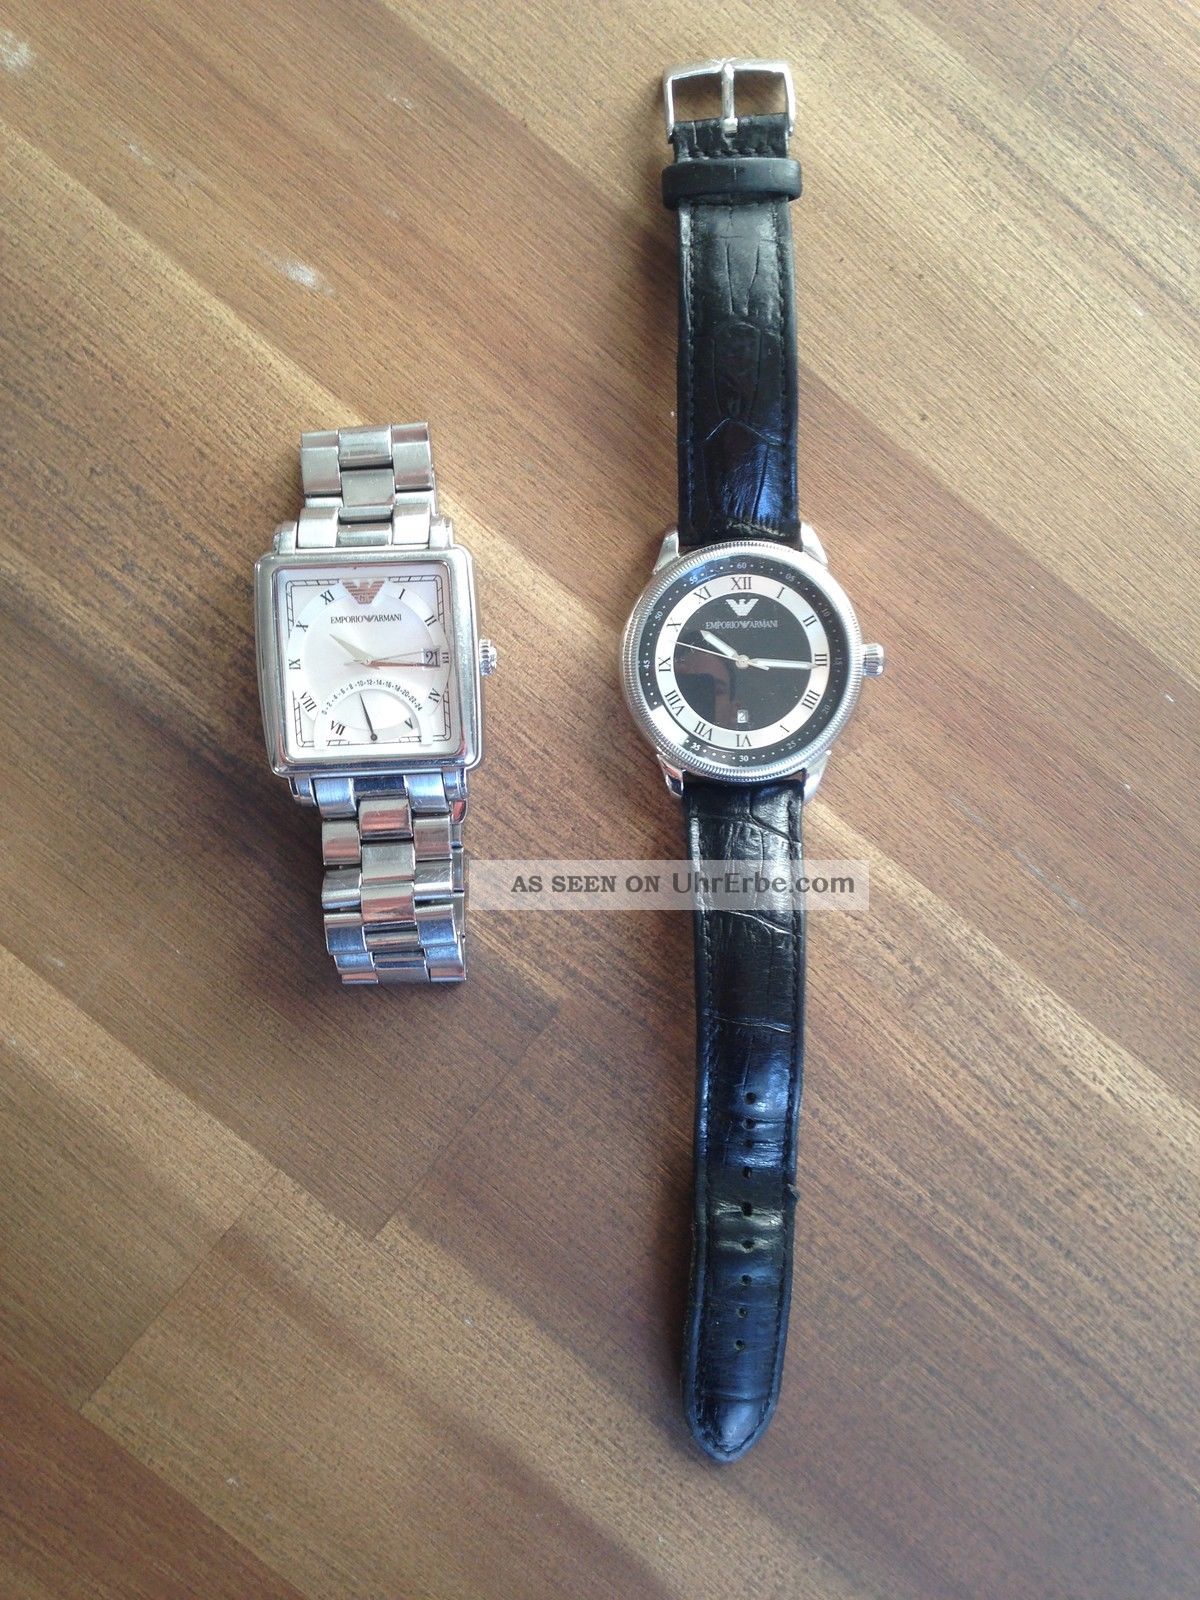 2x Originale Emporio Armani Armbanduhr Für Herren Armbanduhren Bild